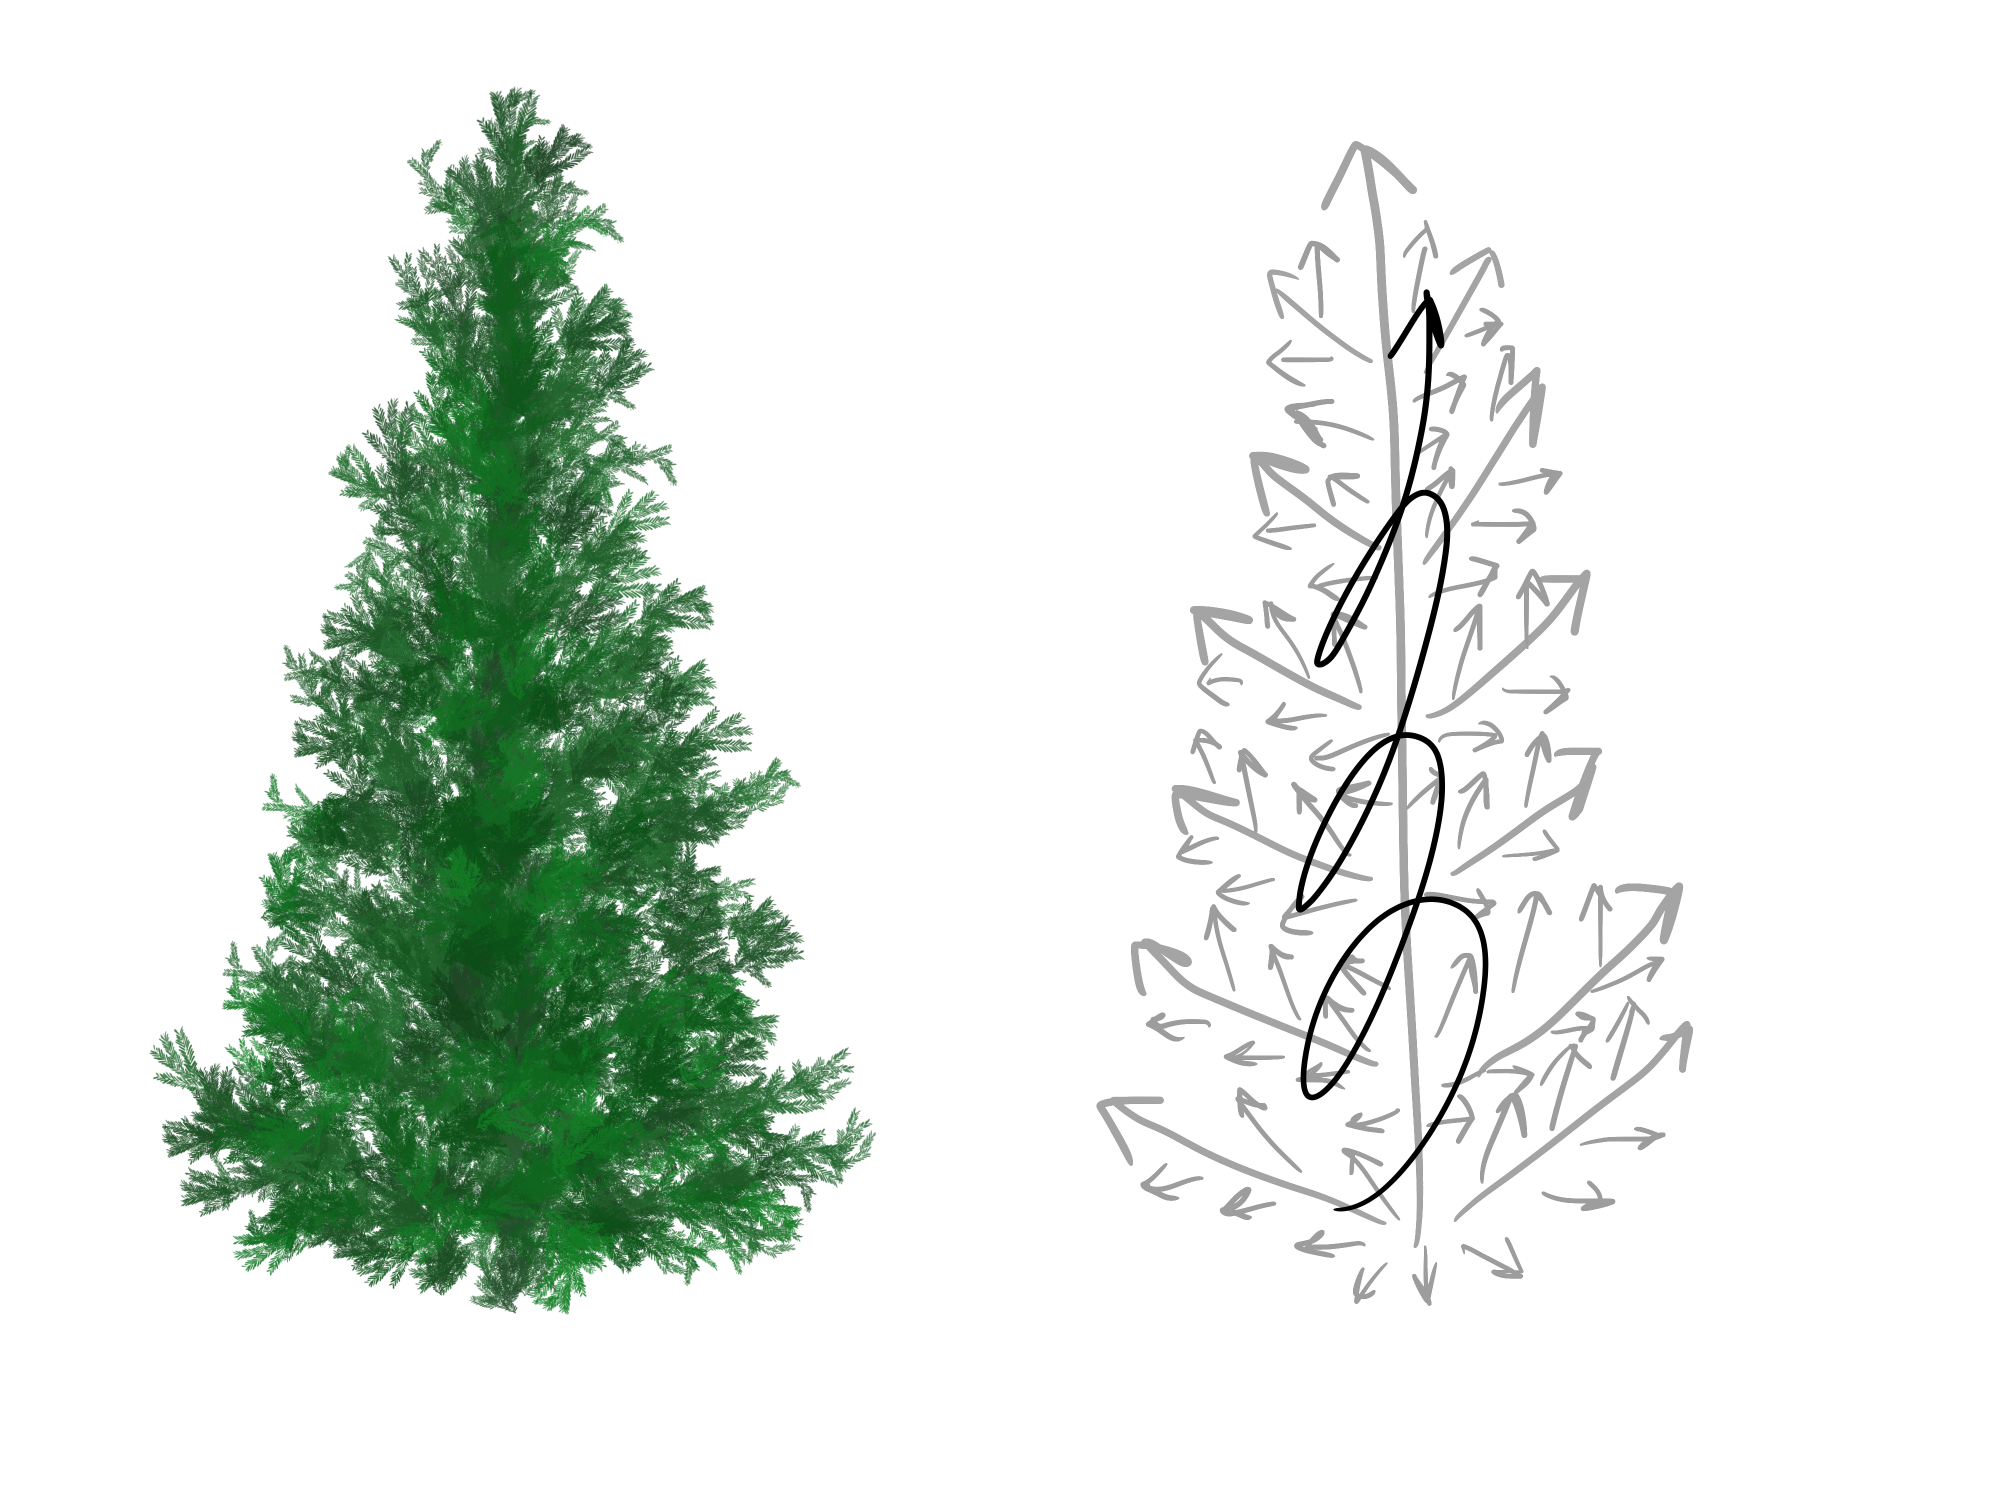 クリスマスツリーを描いてみた Medibang Paint 無料のイラスト マンガ制作ツール